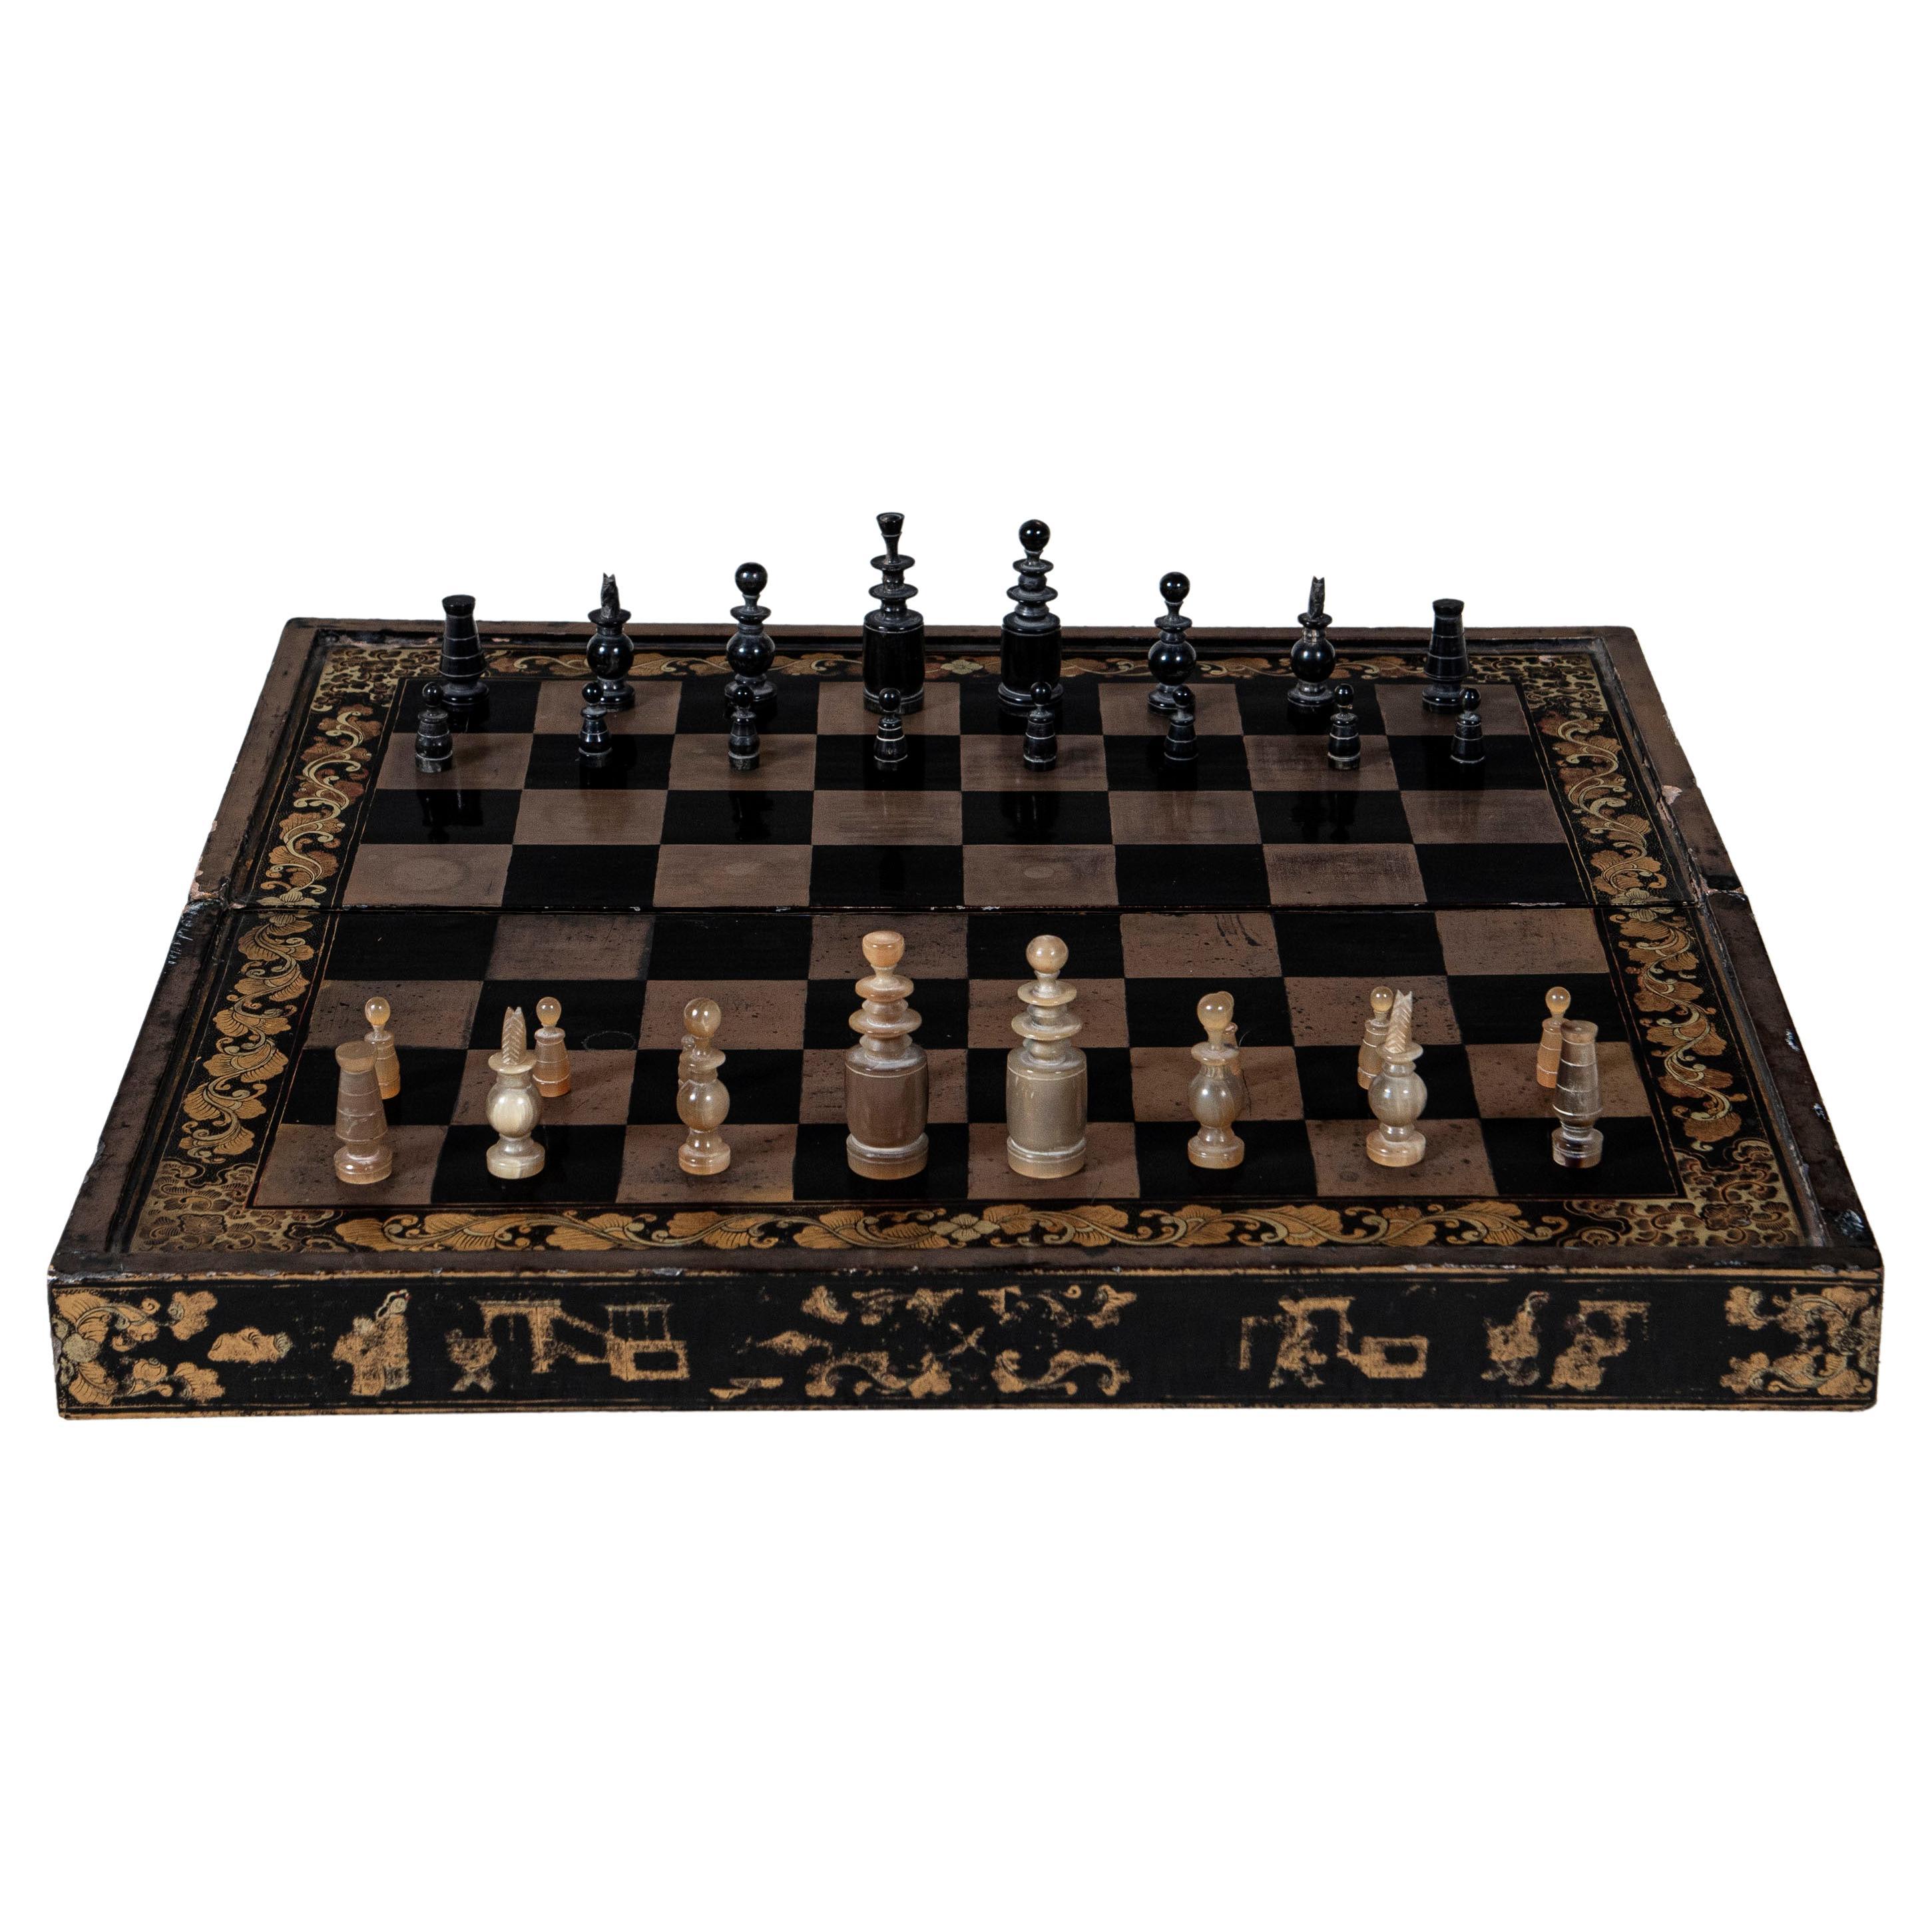 Planche en bois laqué échecs et backgammon, Chine, fin du 19e siècle.